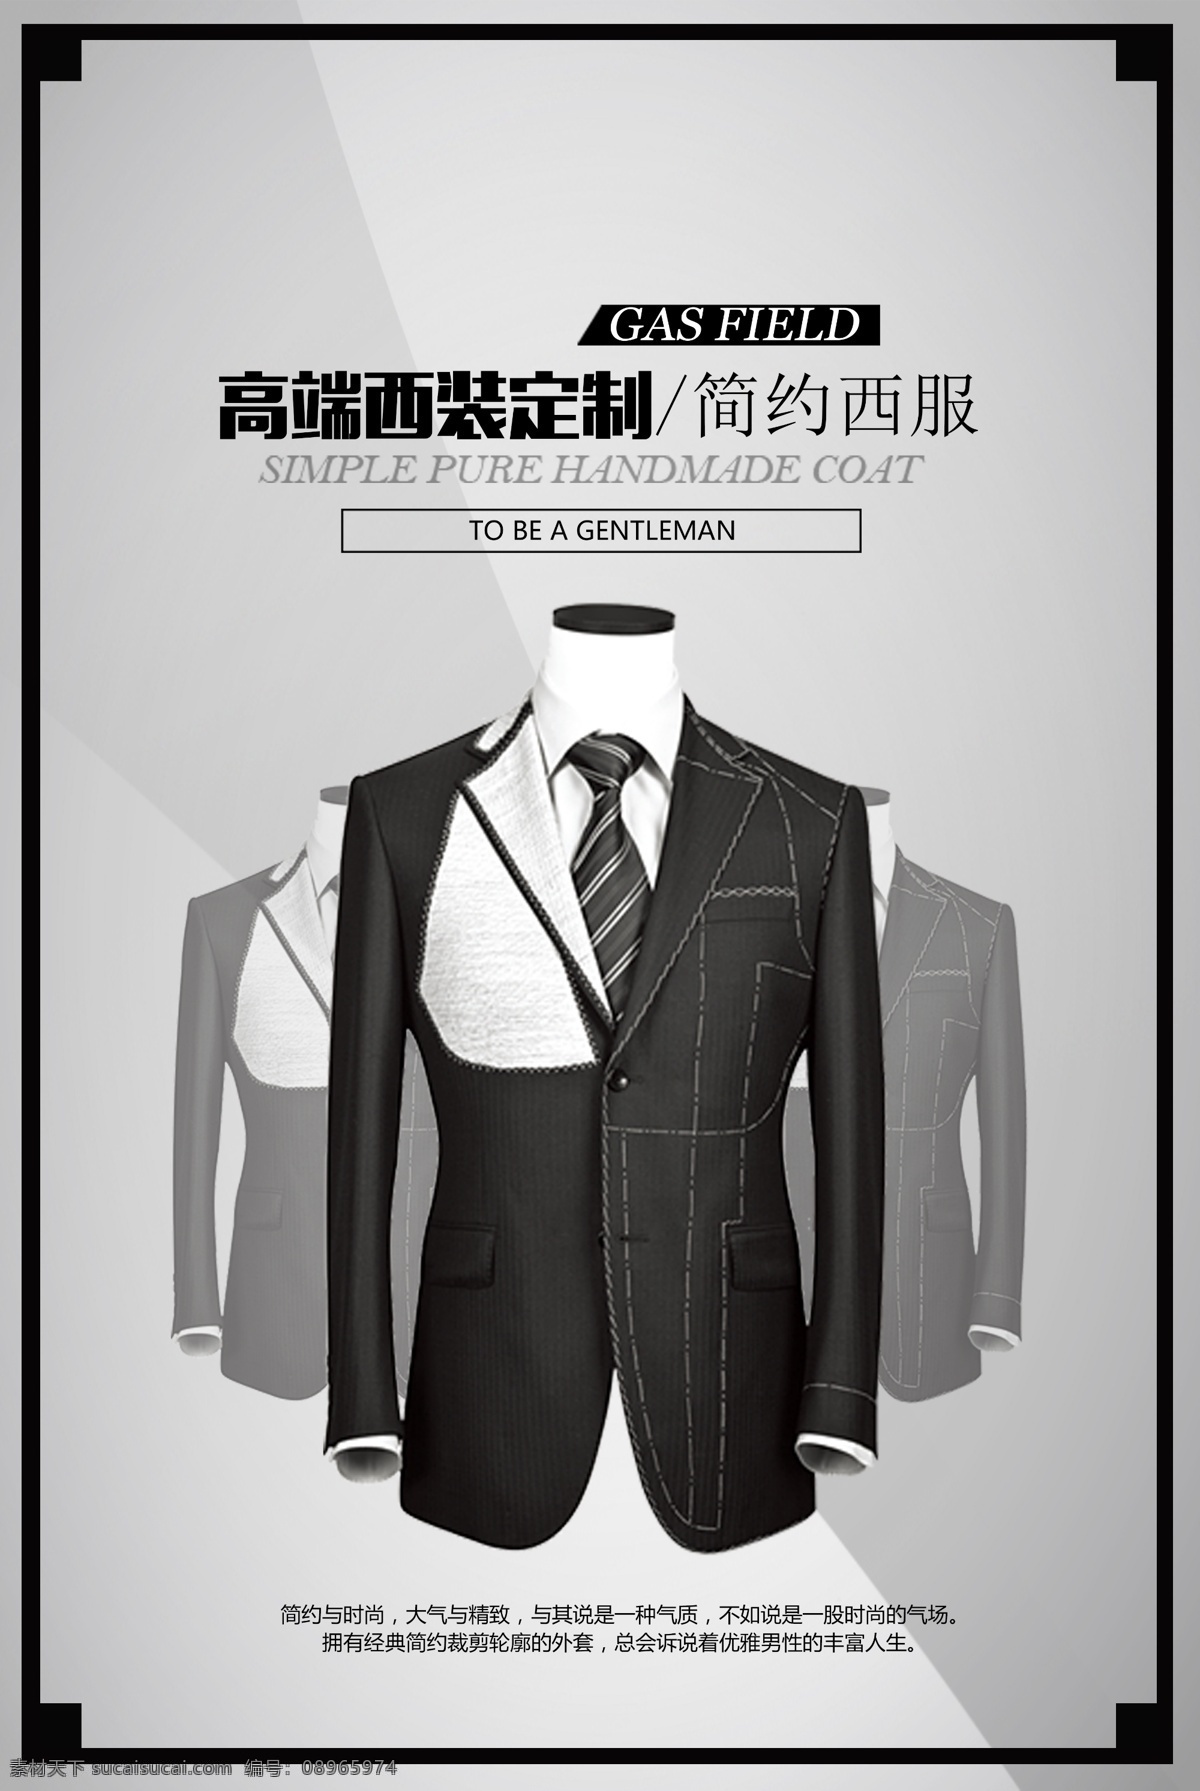 服装定制设计 服装 定制设计 男装 大气 海拔 广告 现代 时尚尖端